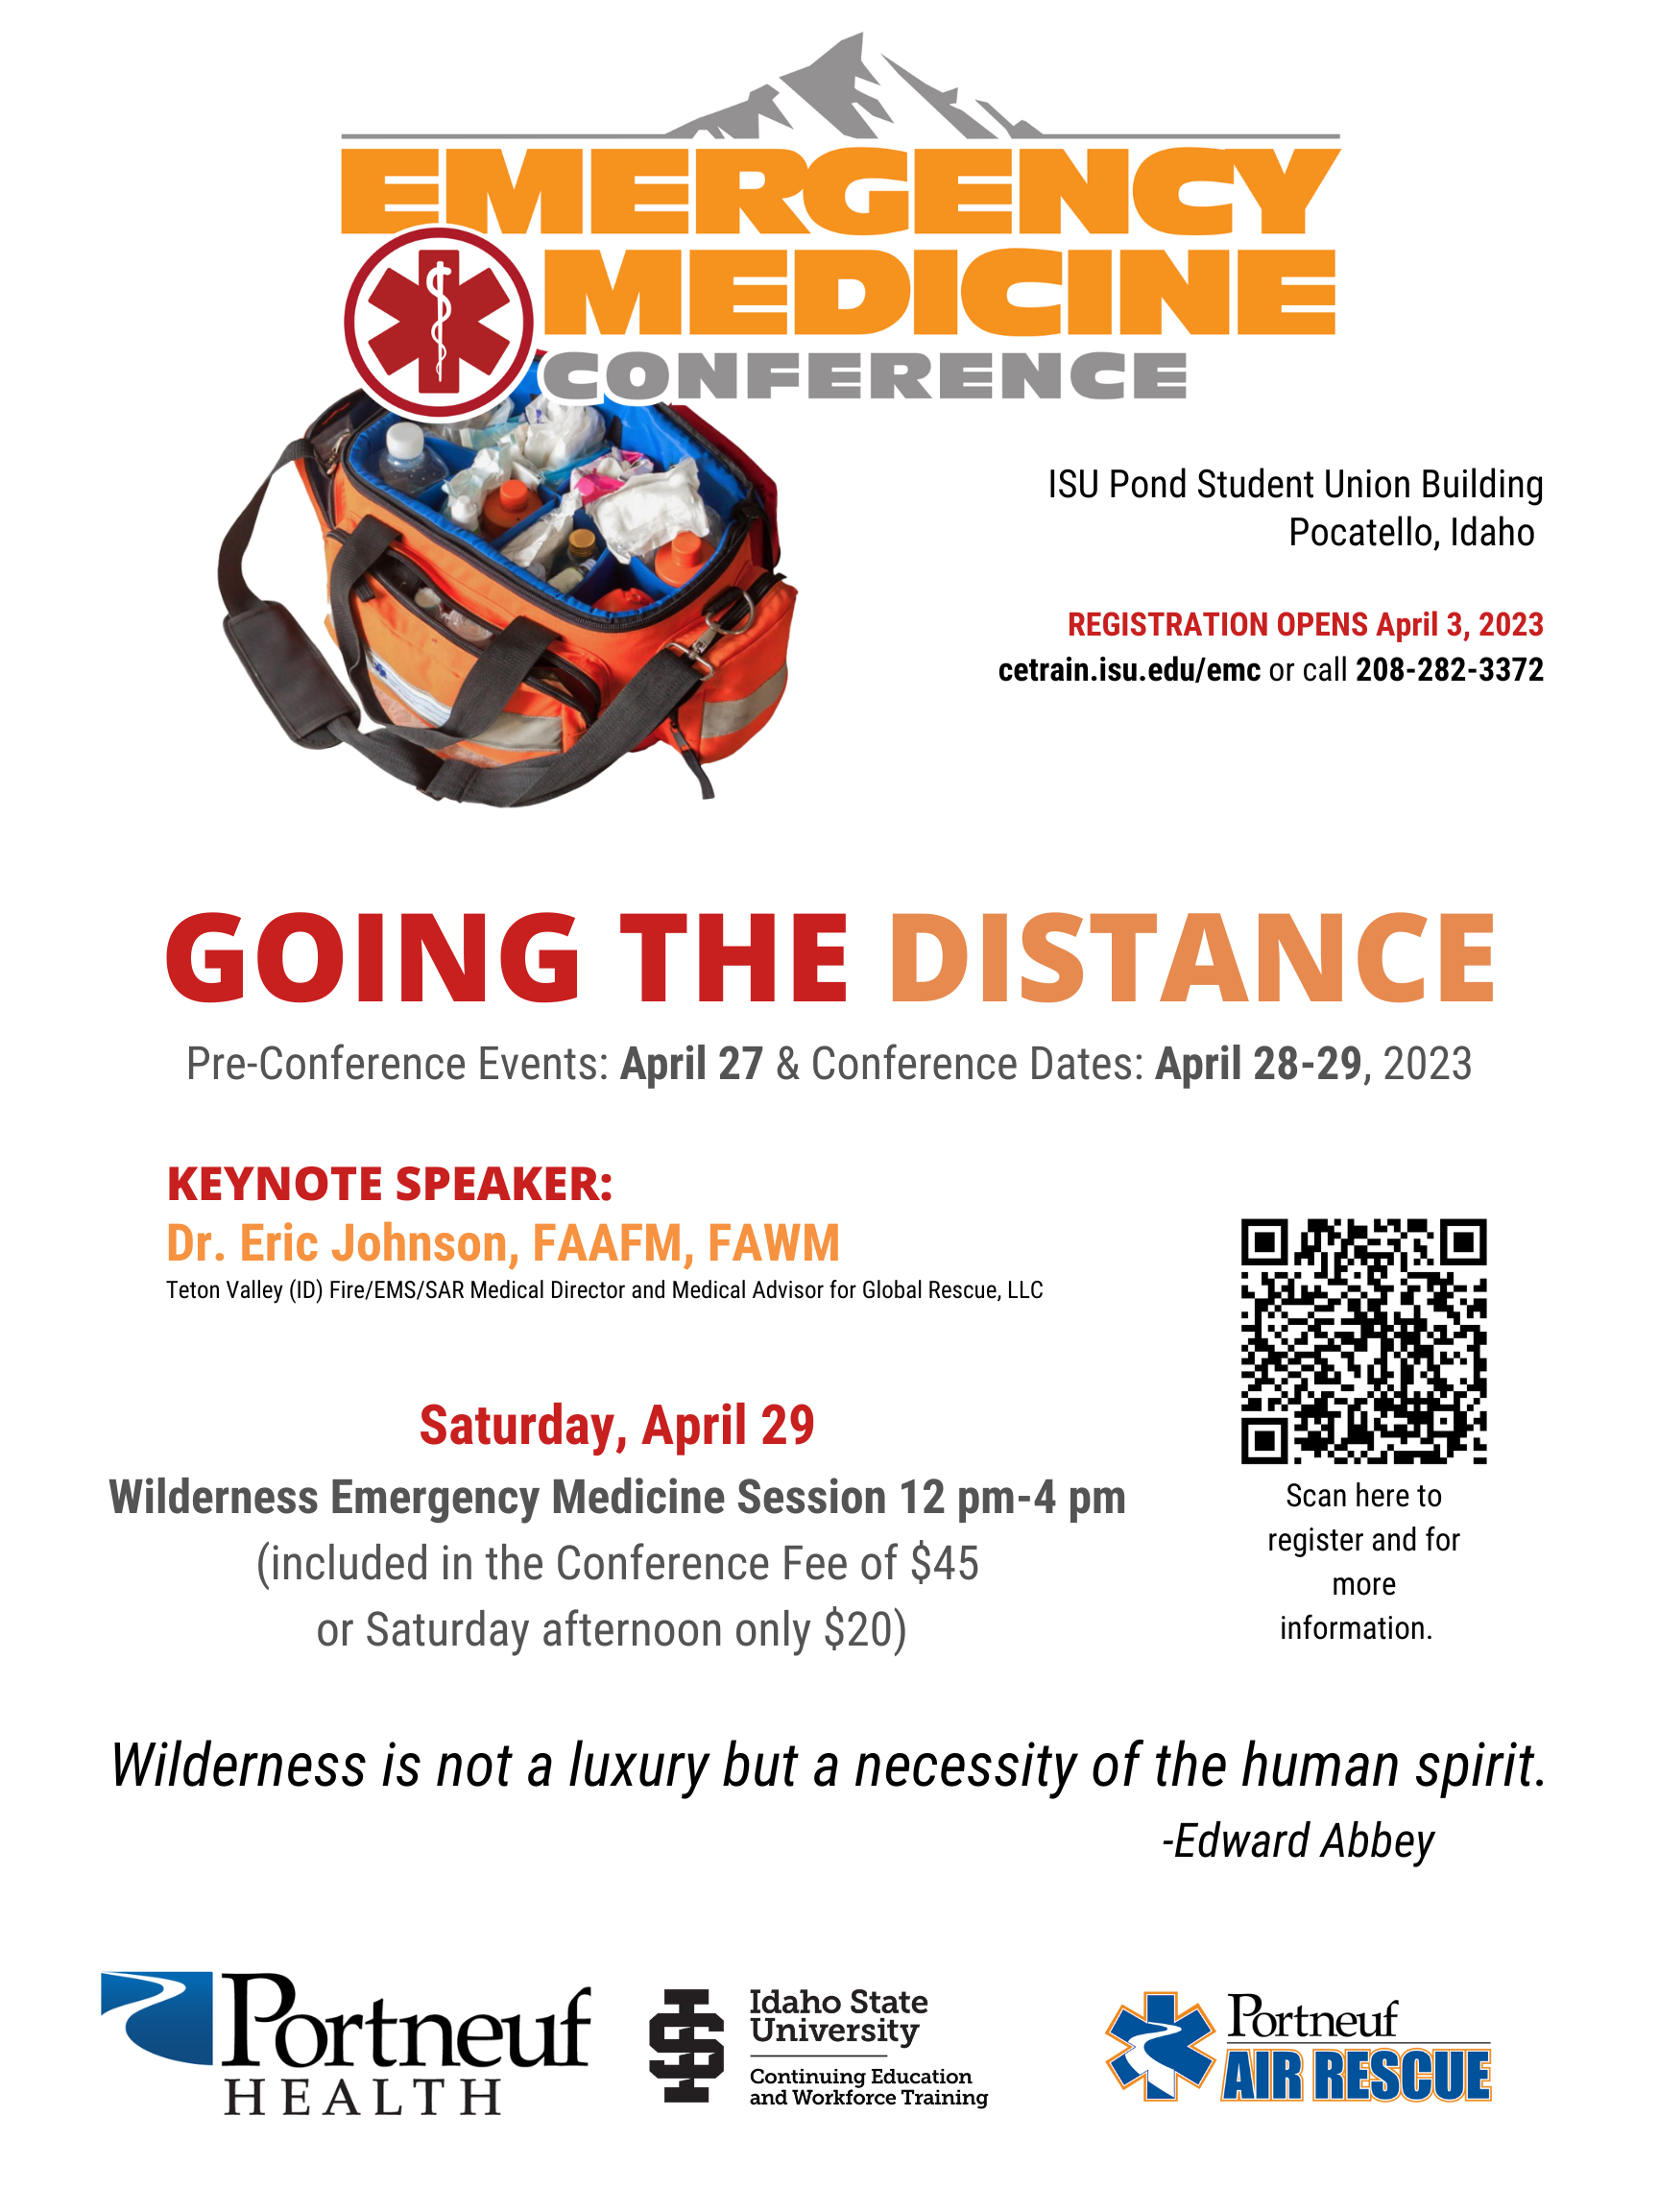 Emergency Medicine Conference 2023 - Wilderness Flyer Image